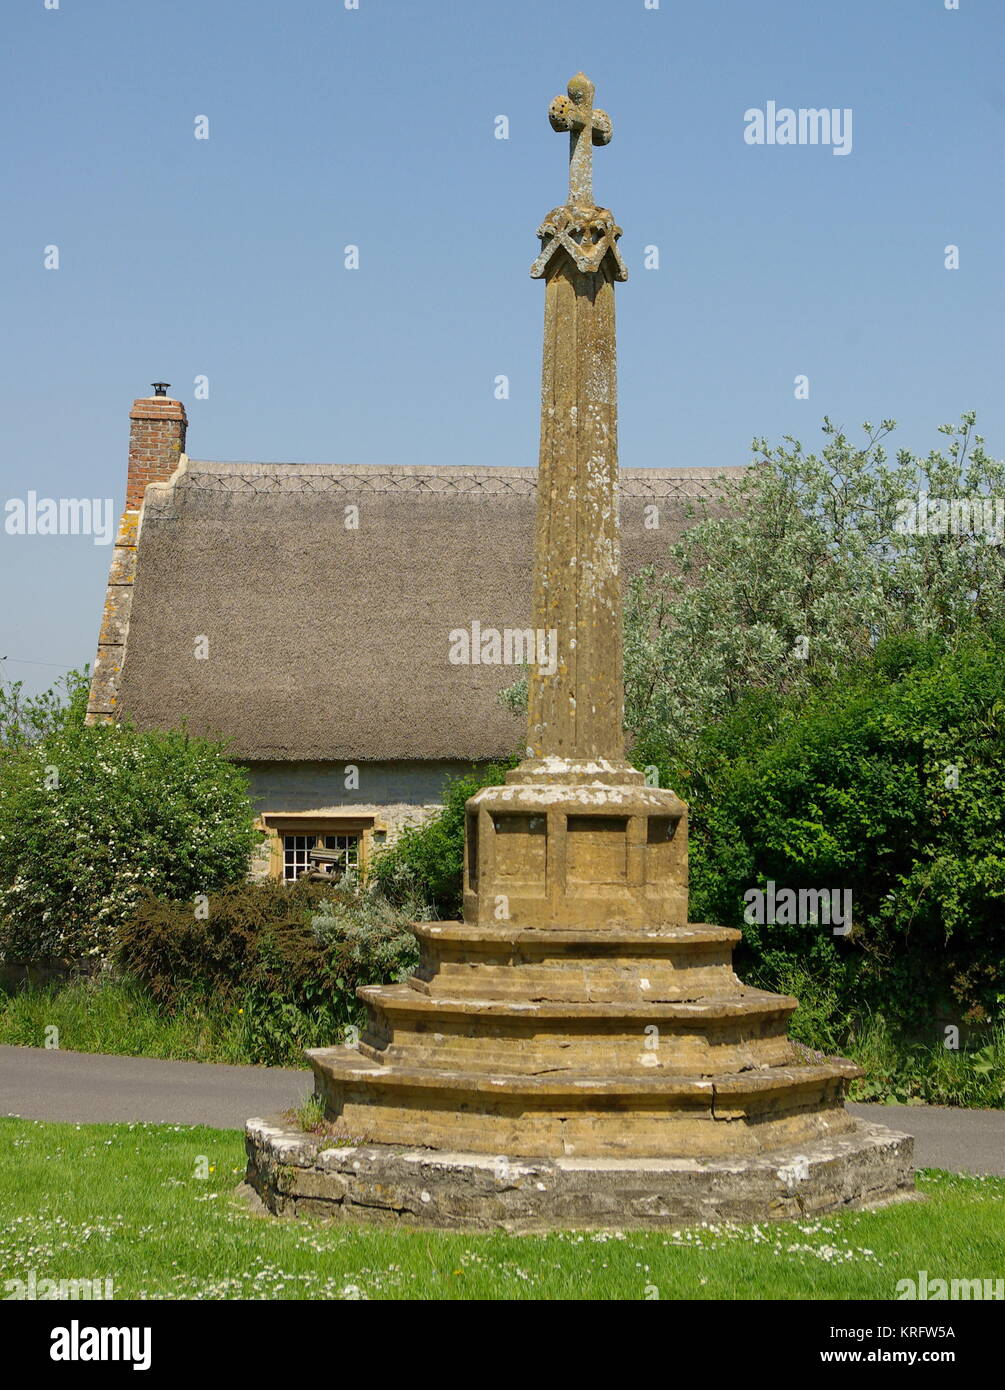 Croix de village datant du 15ème siècle dans le village de Muchelney, Somerset. La maison du curé est visible en arrière-plan. Date : 2014 Banque D'Images